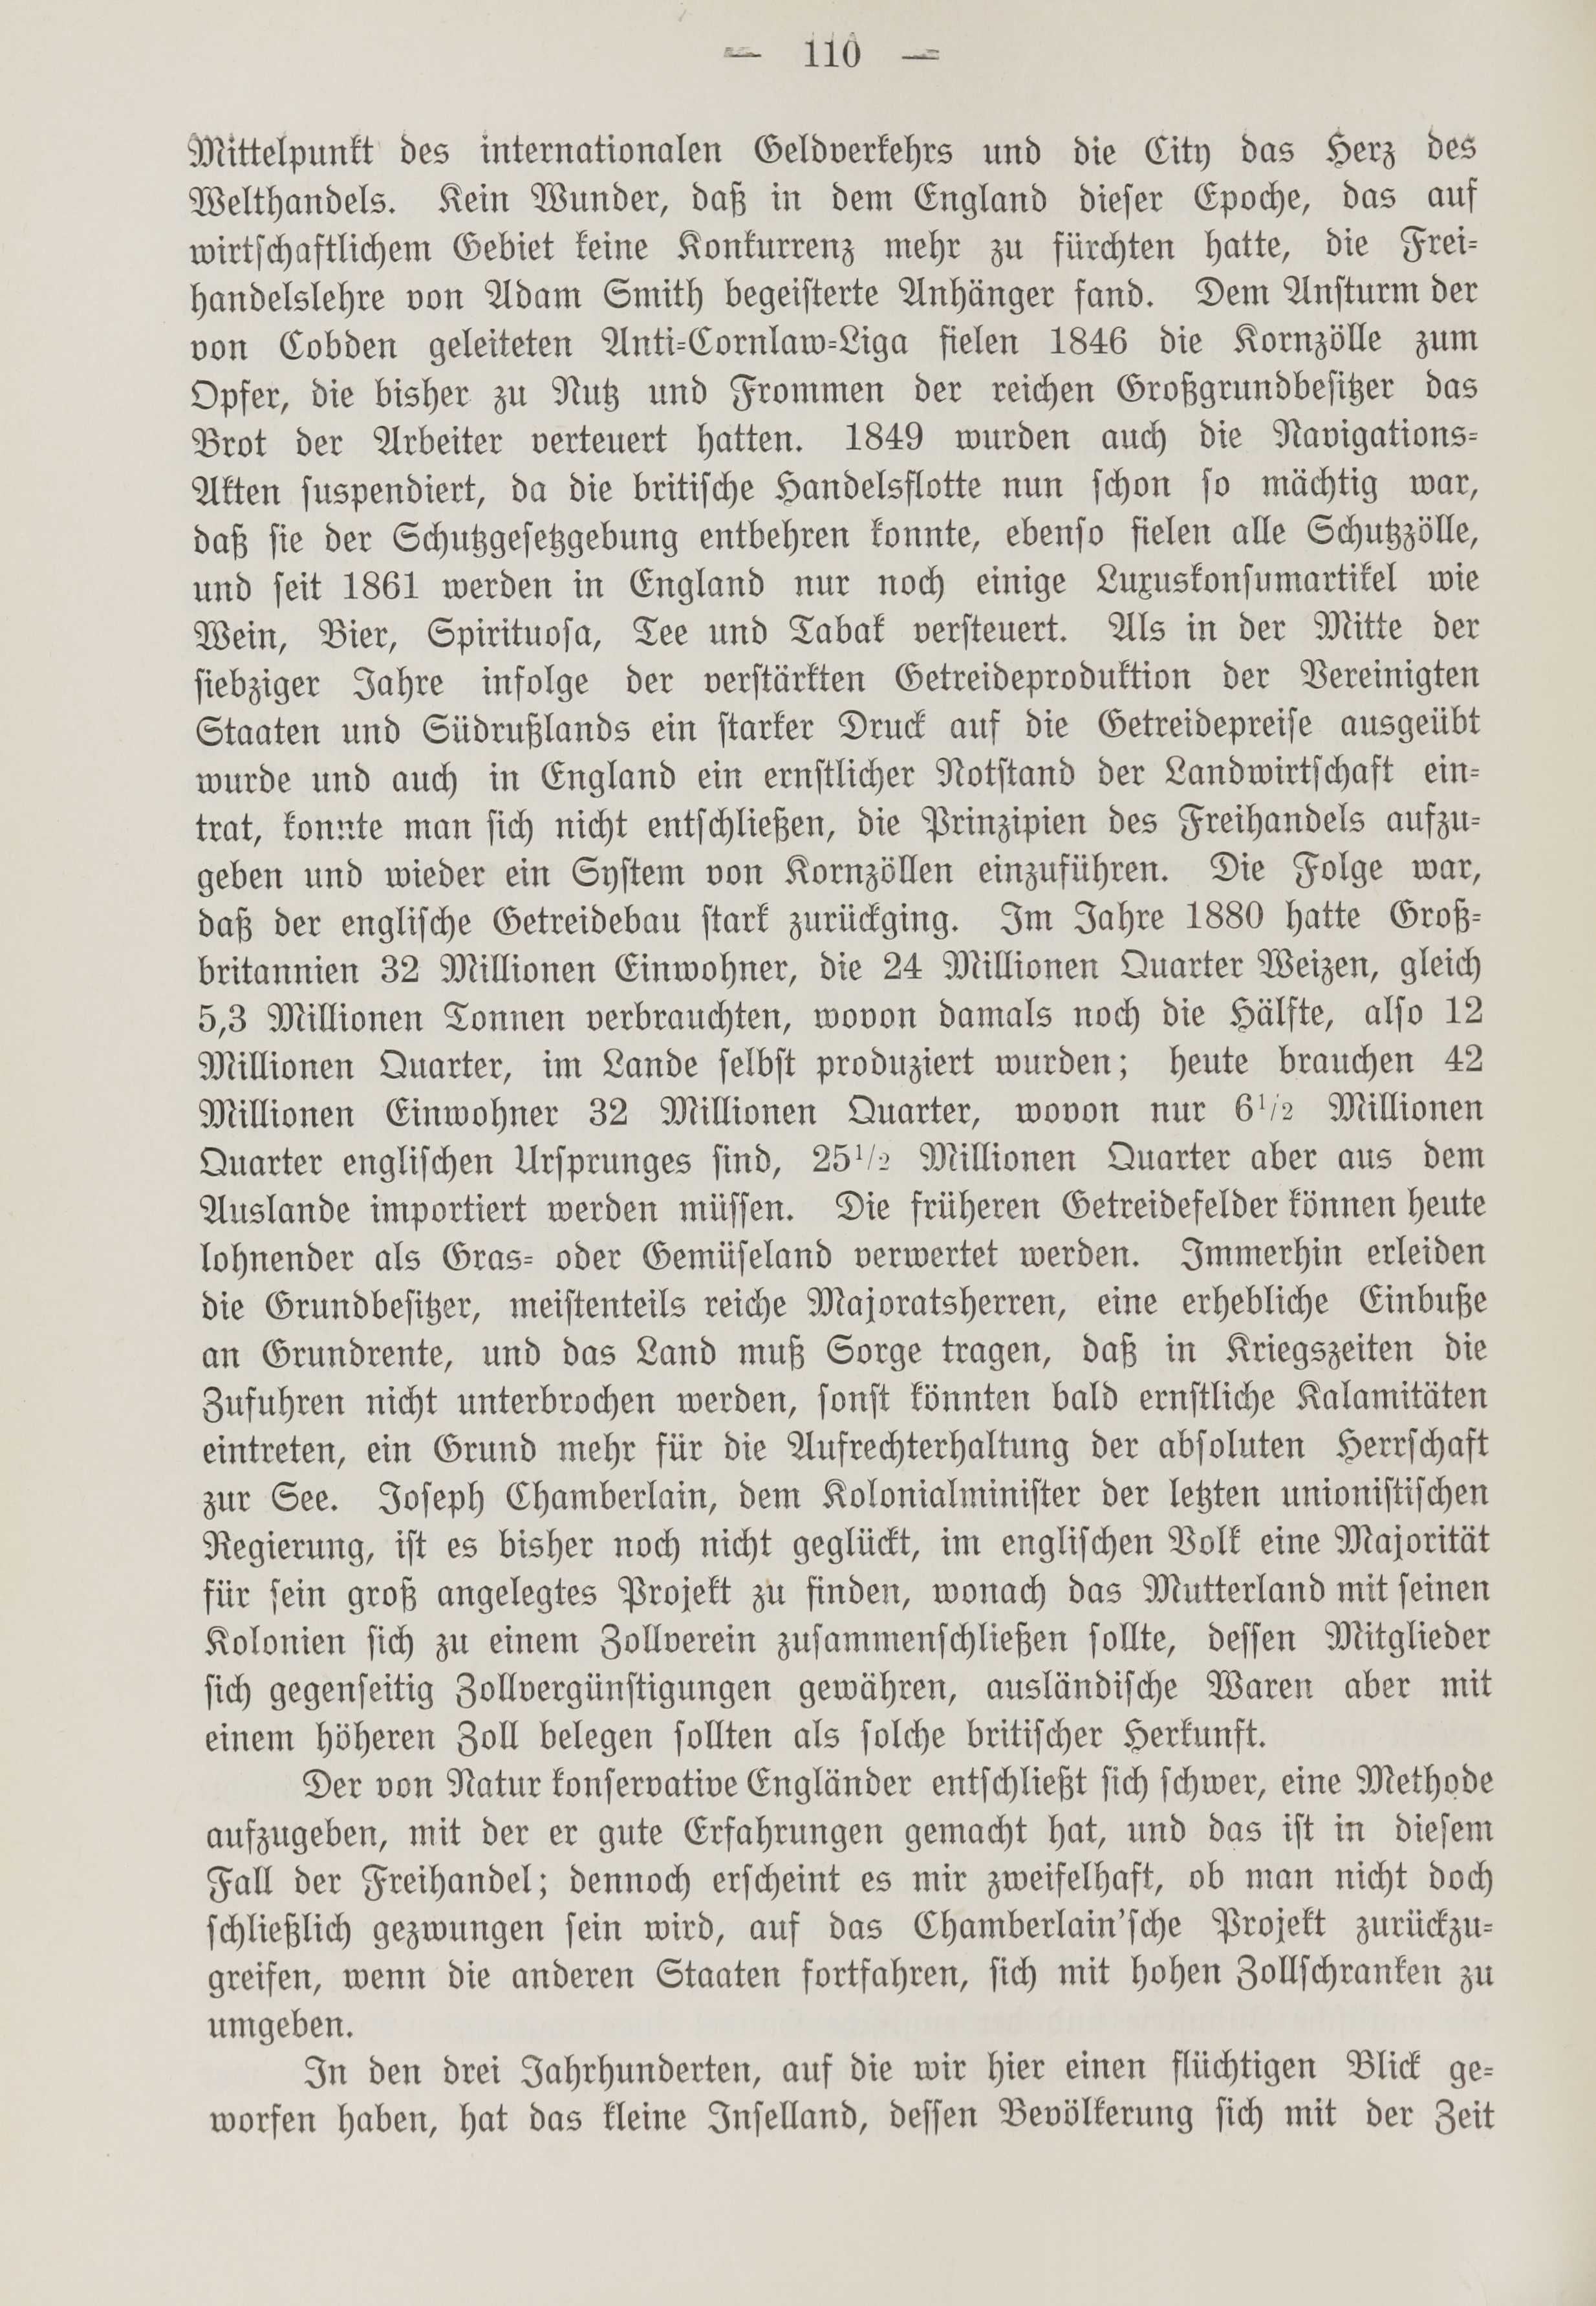 Deutsche Monatsschrift für Russland [1] (1912) | 118. (110) Основной текст